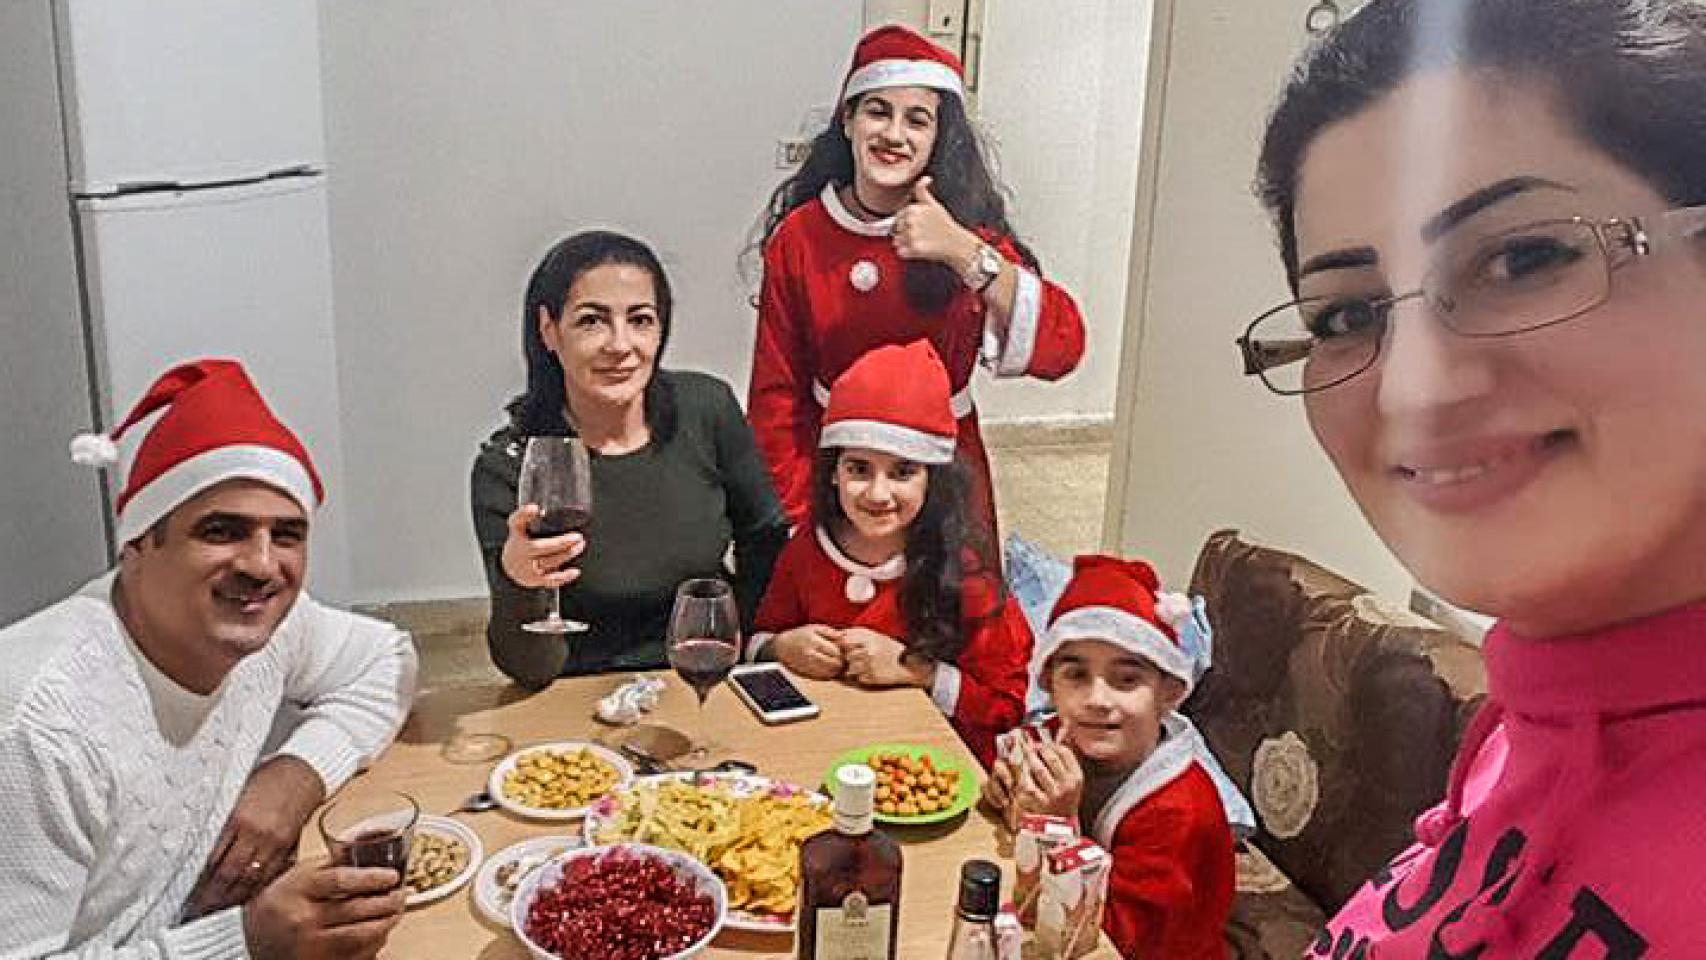 Susan Patto, asiria de Bagdad, en el centro de la foto, celebrando las Navidades. Conocía la historia de los Reyes Magos, pero según afirma, su tradición no confiere mucha importancia a los Reyes Magos.